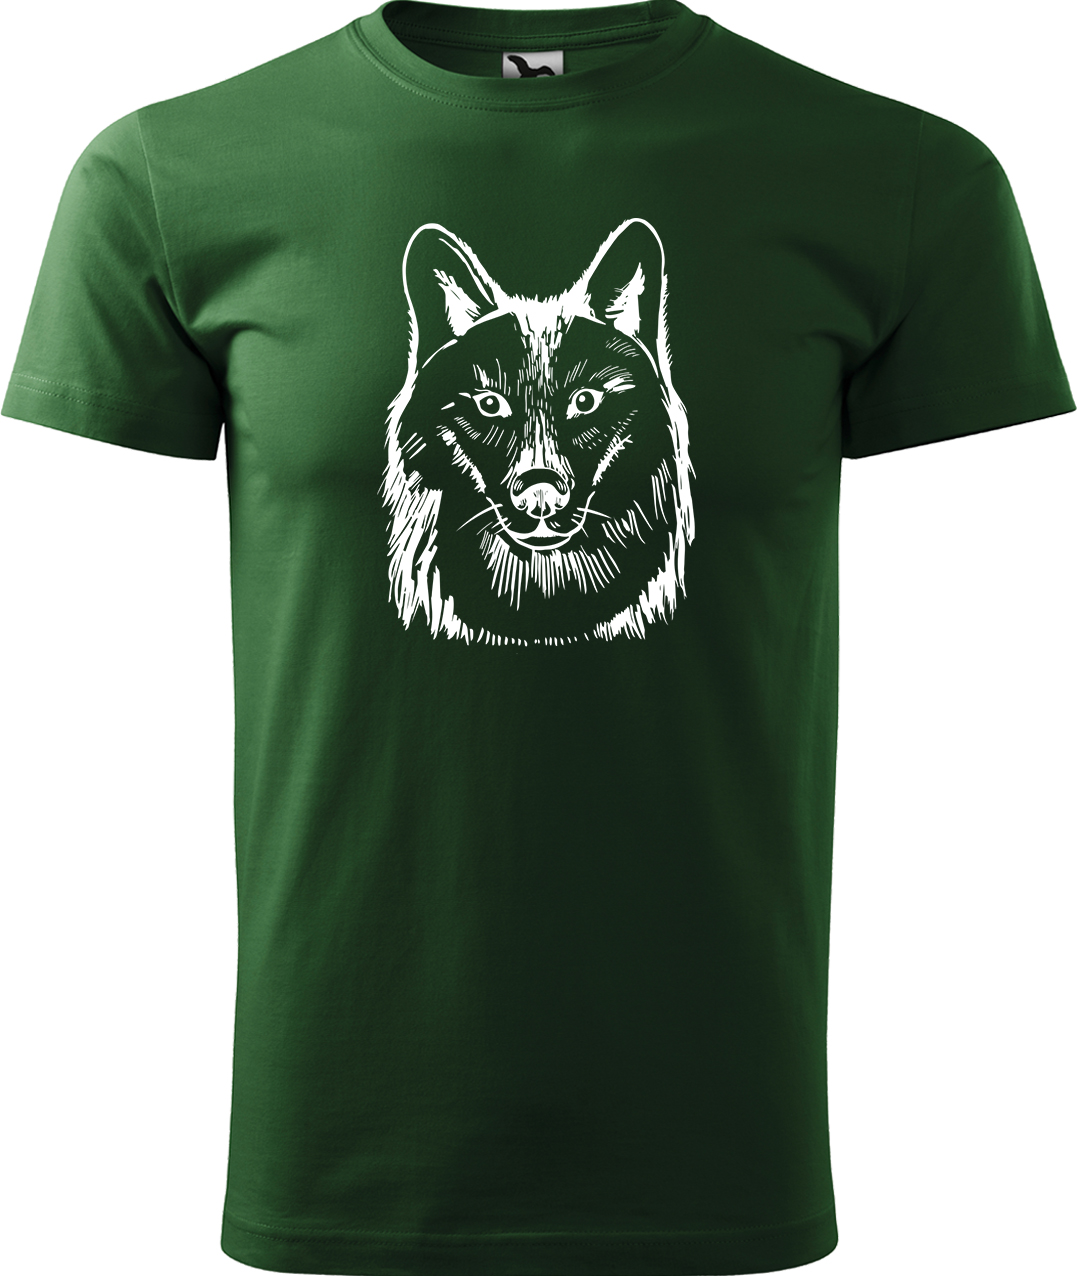 Pánské tričko s vlkem - Kresba vlka Velikost: XL, Barva: Lahvově zelená (06), Střih: pánský